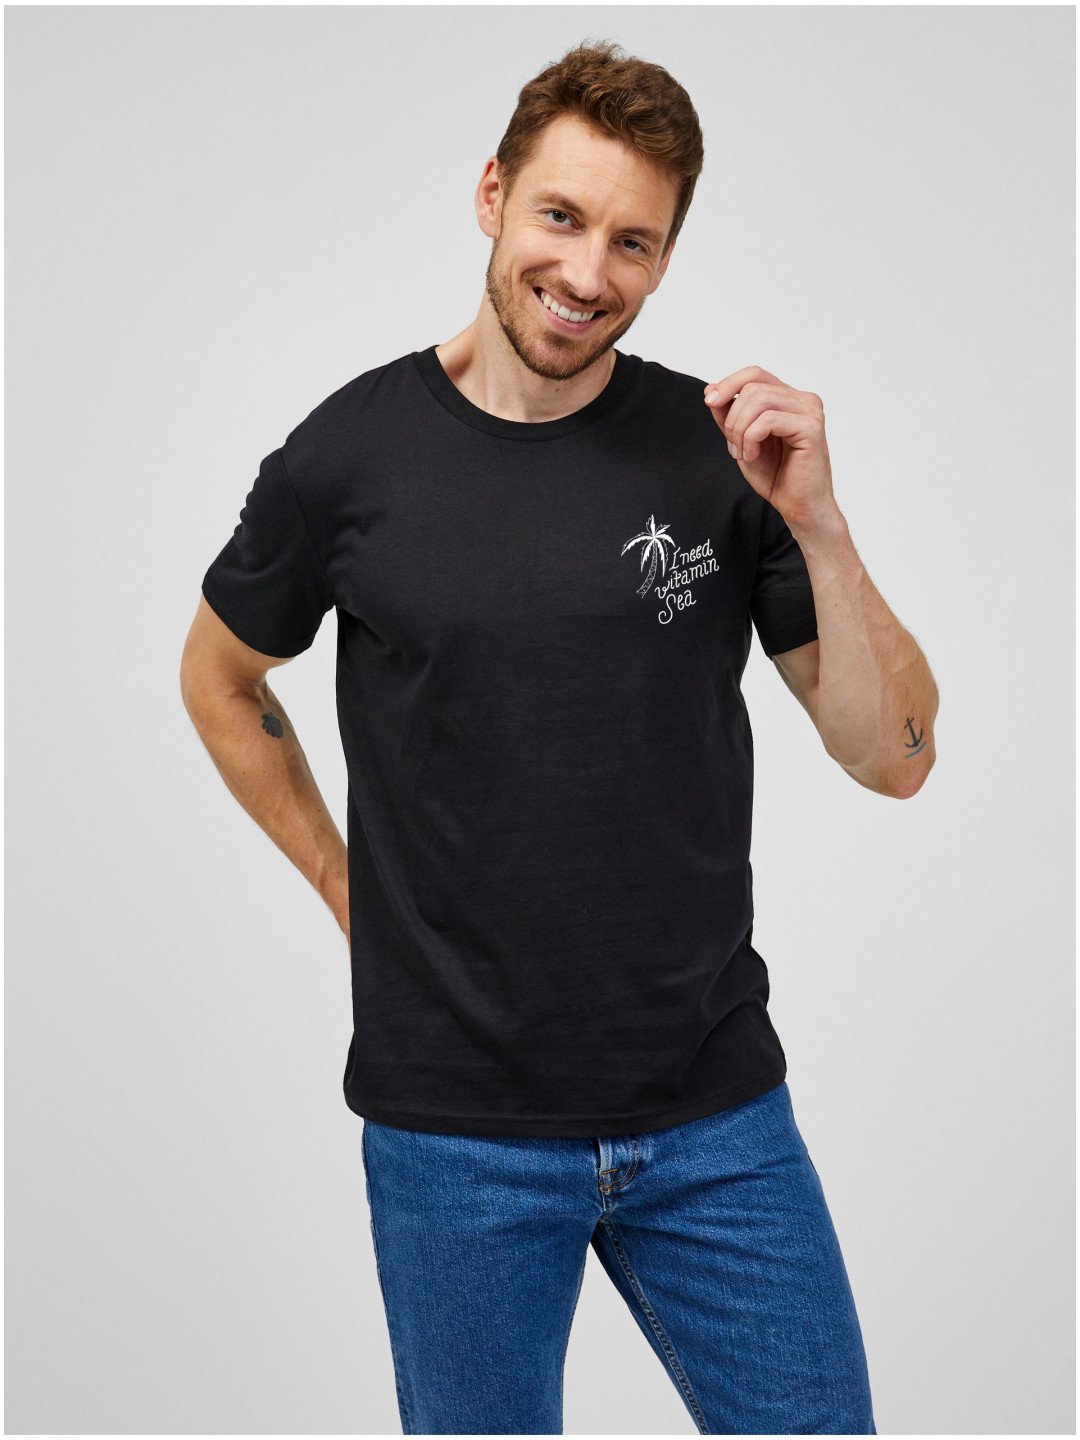 Černé pánské tričko ZOOT Original I need vitamin sea